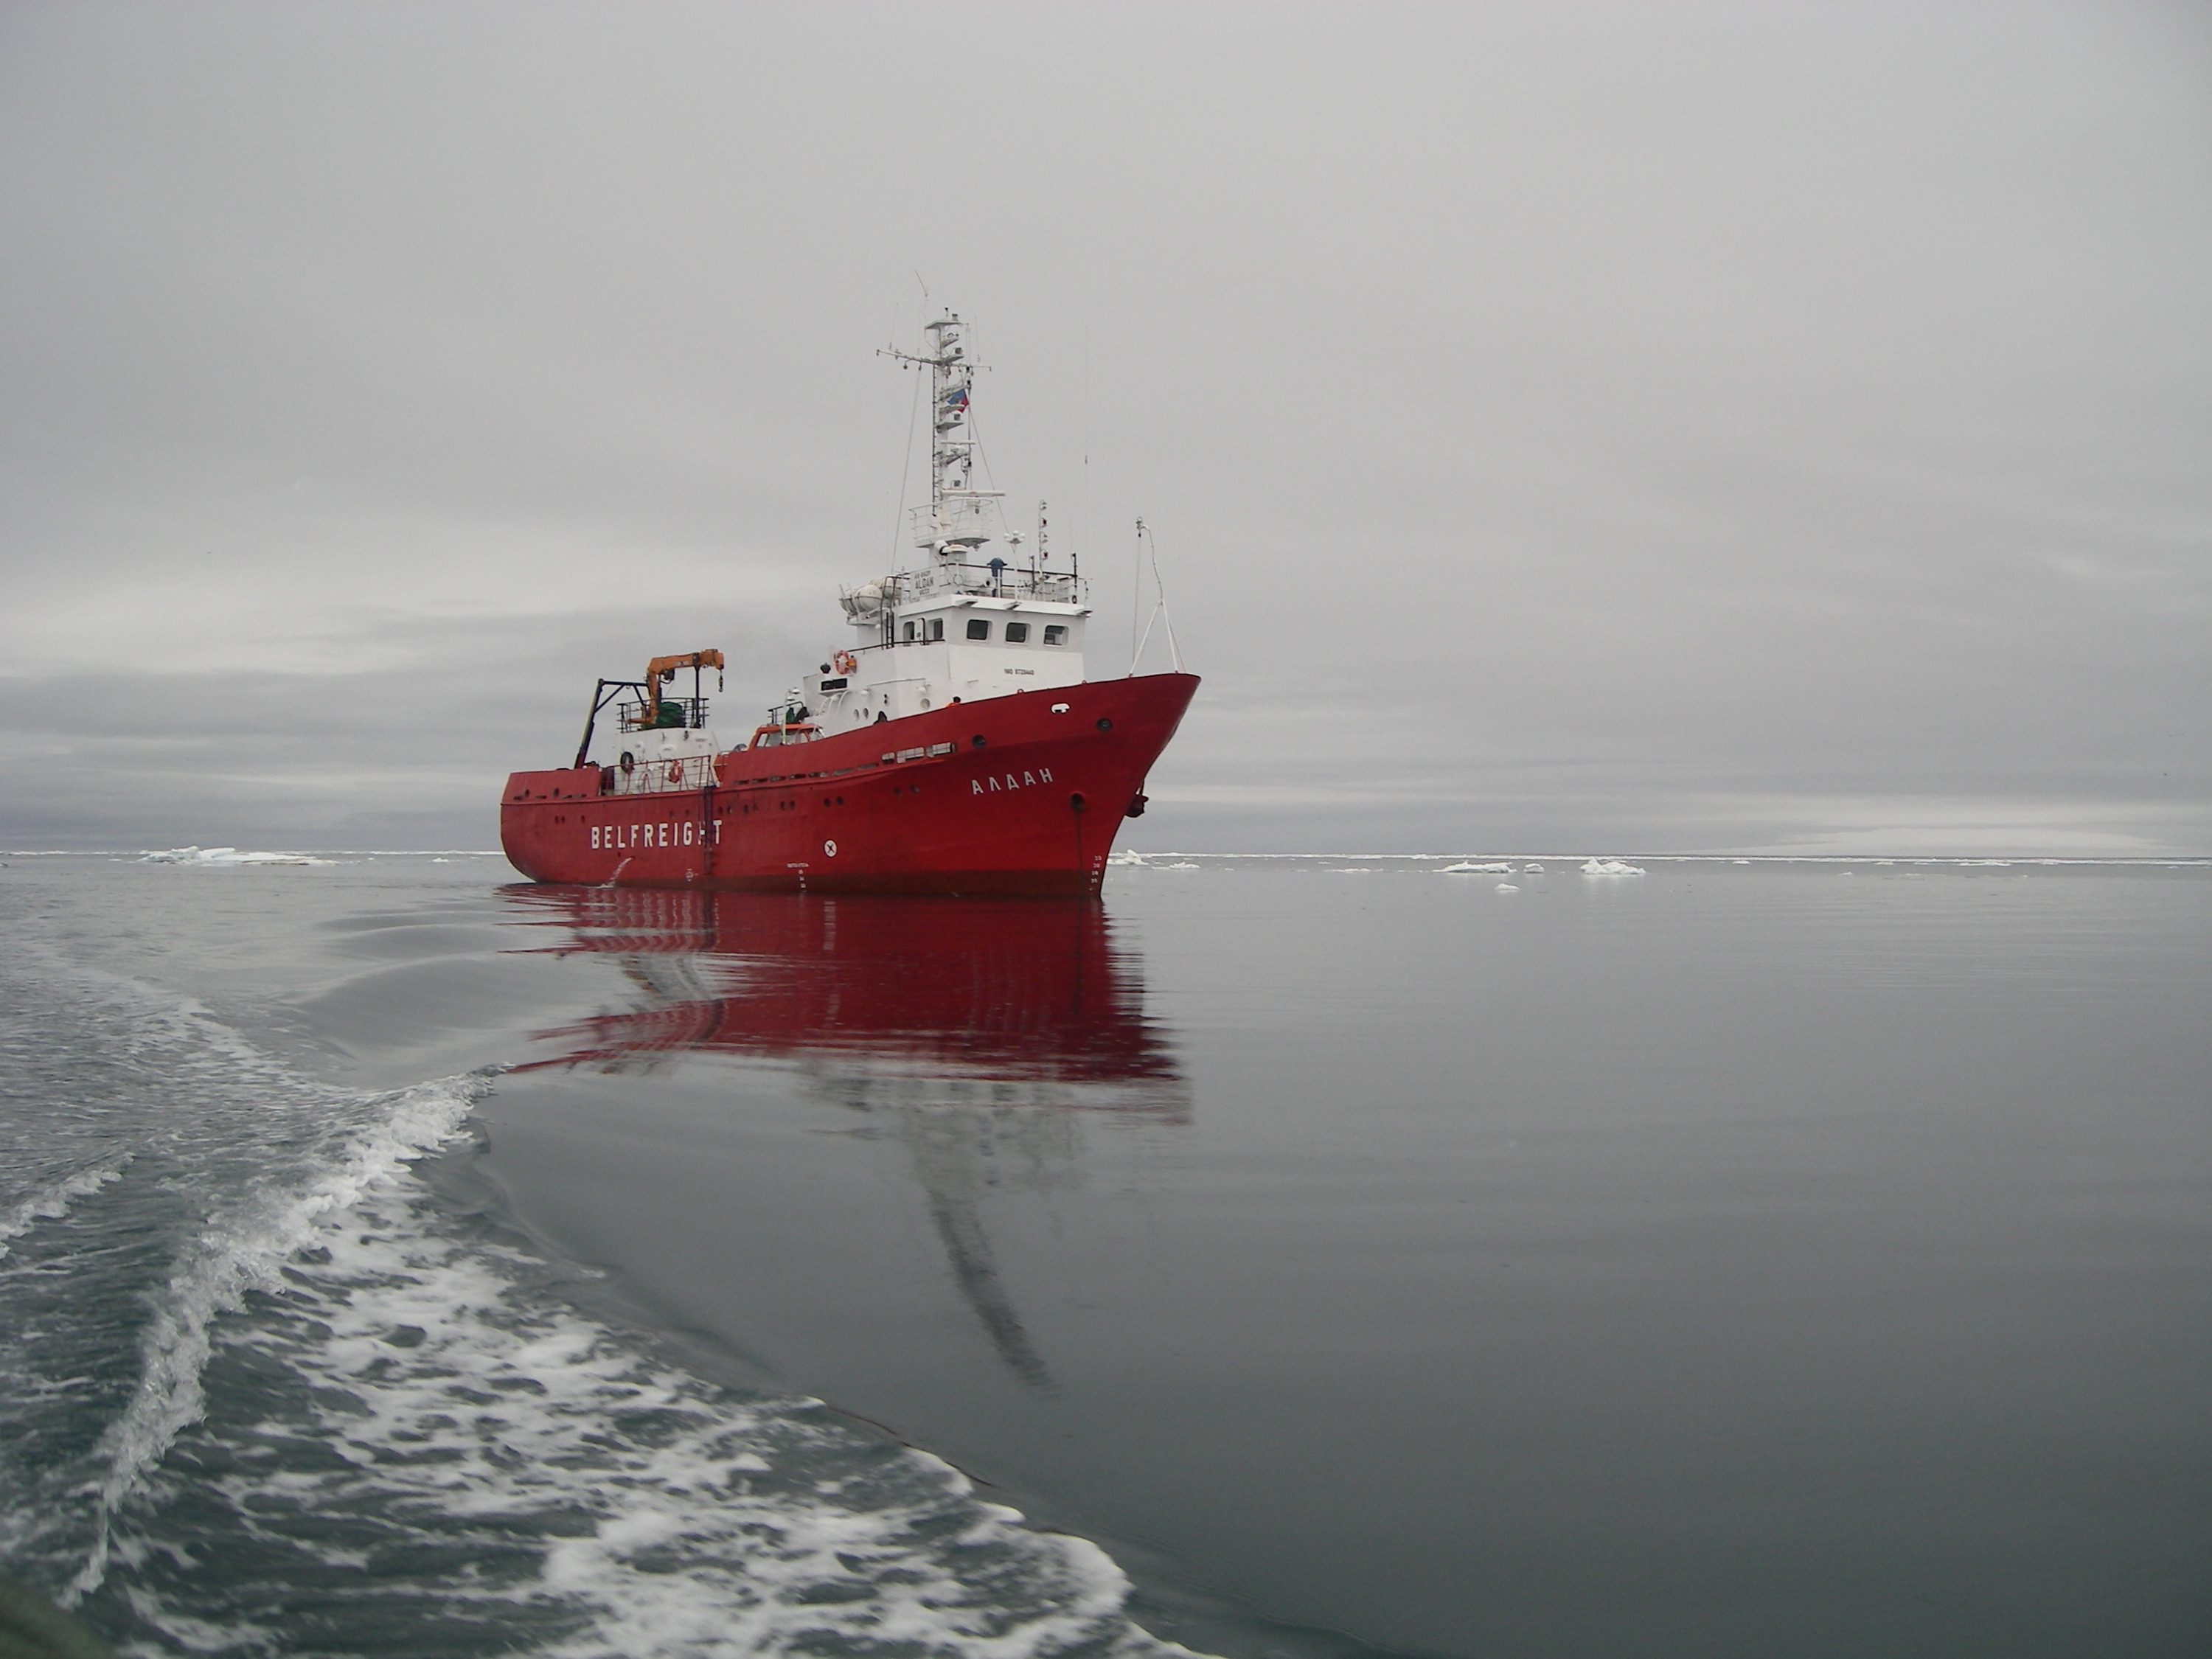 Команда обладает хорошим опытом работы в суровых арктических условиях